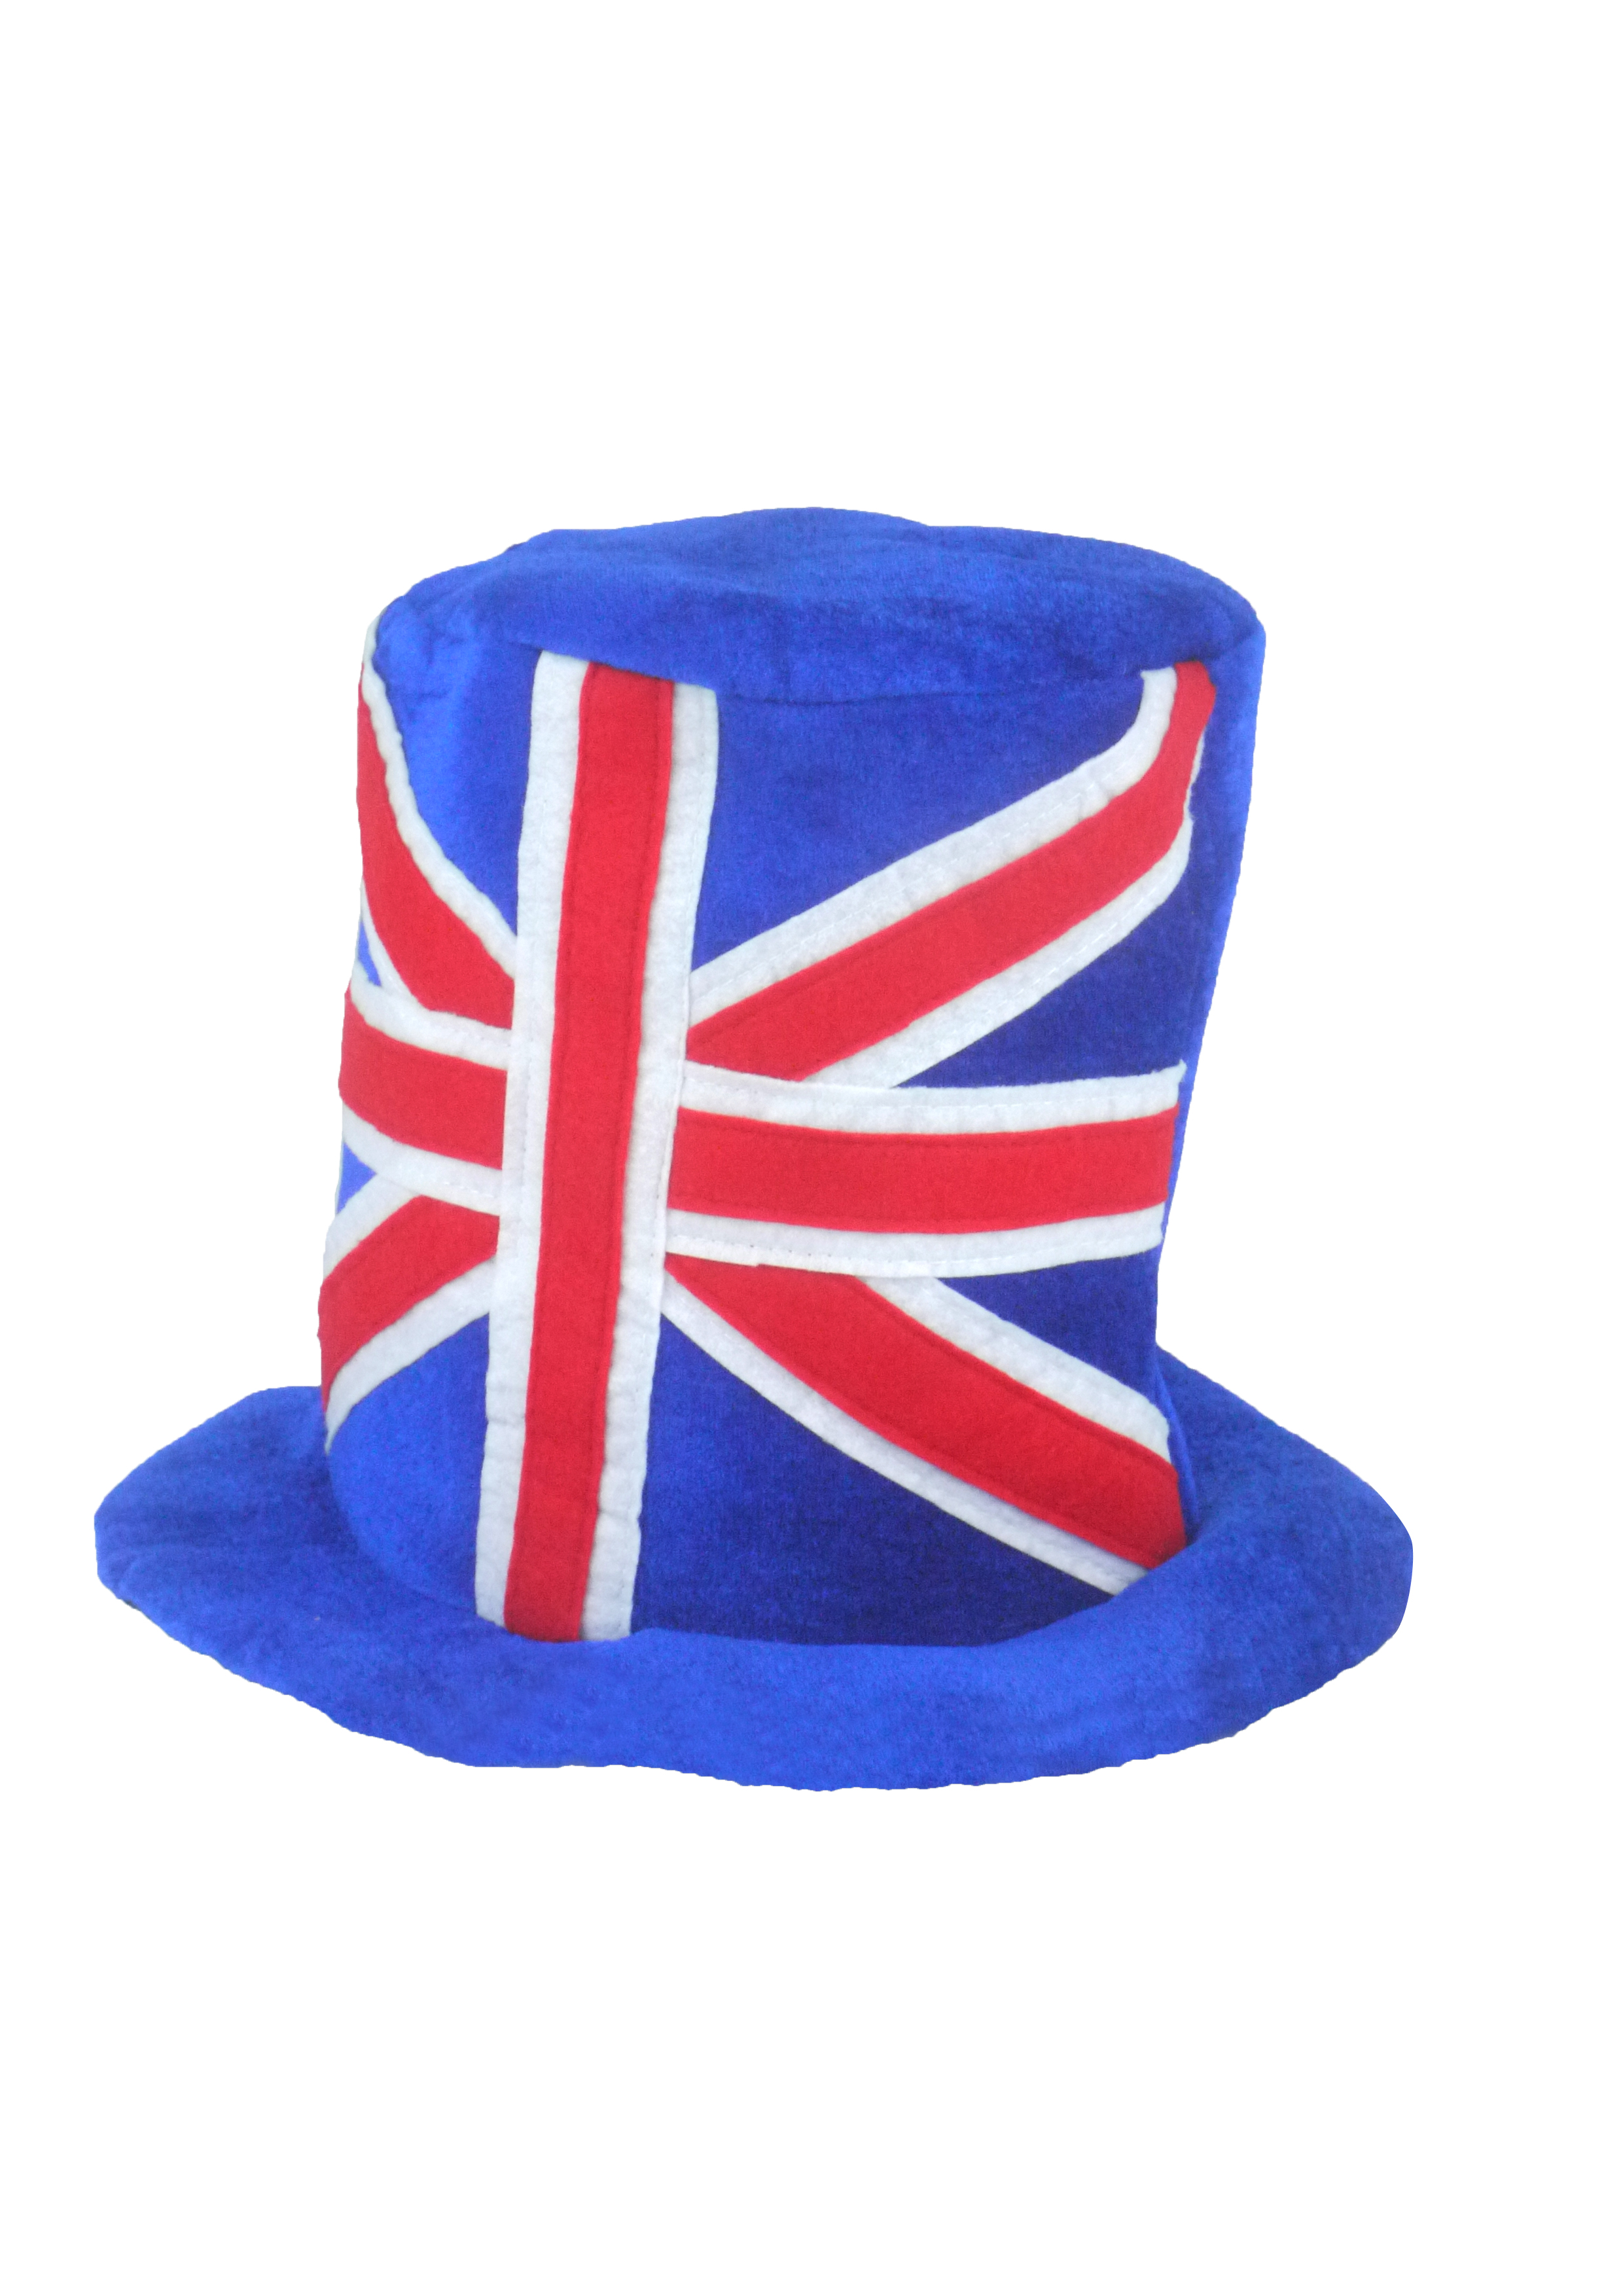 Union Jack Top Hat (Adult) : Henbrandt Ltd